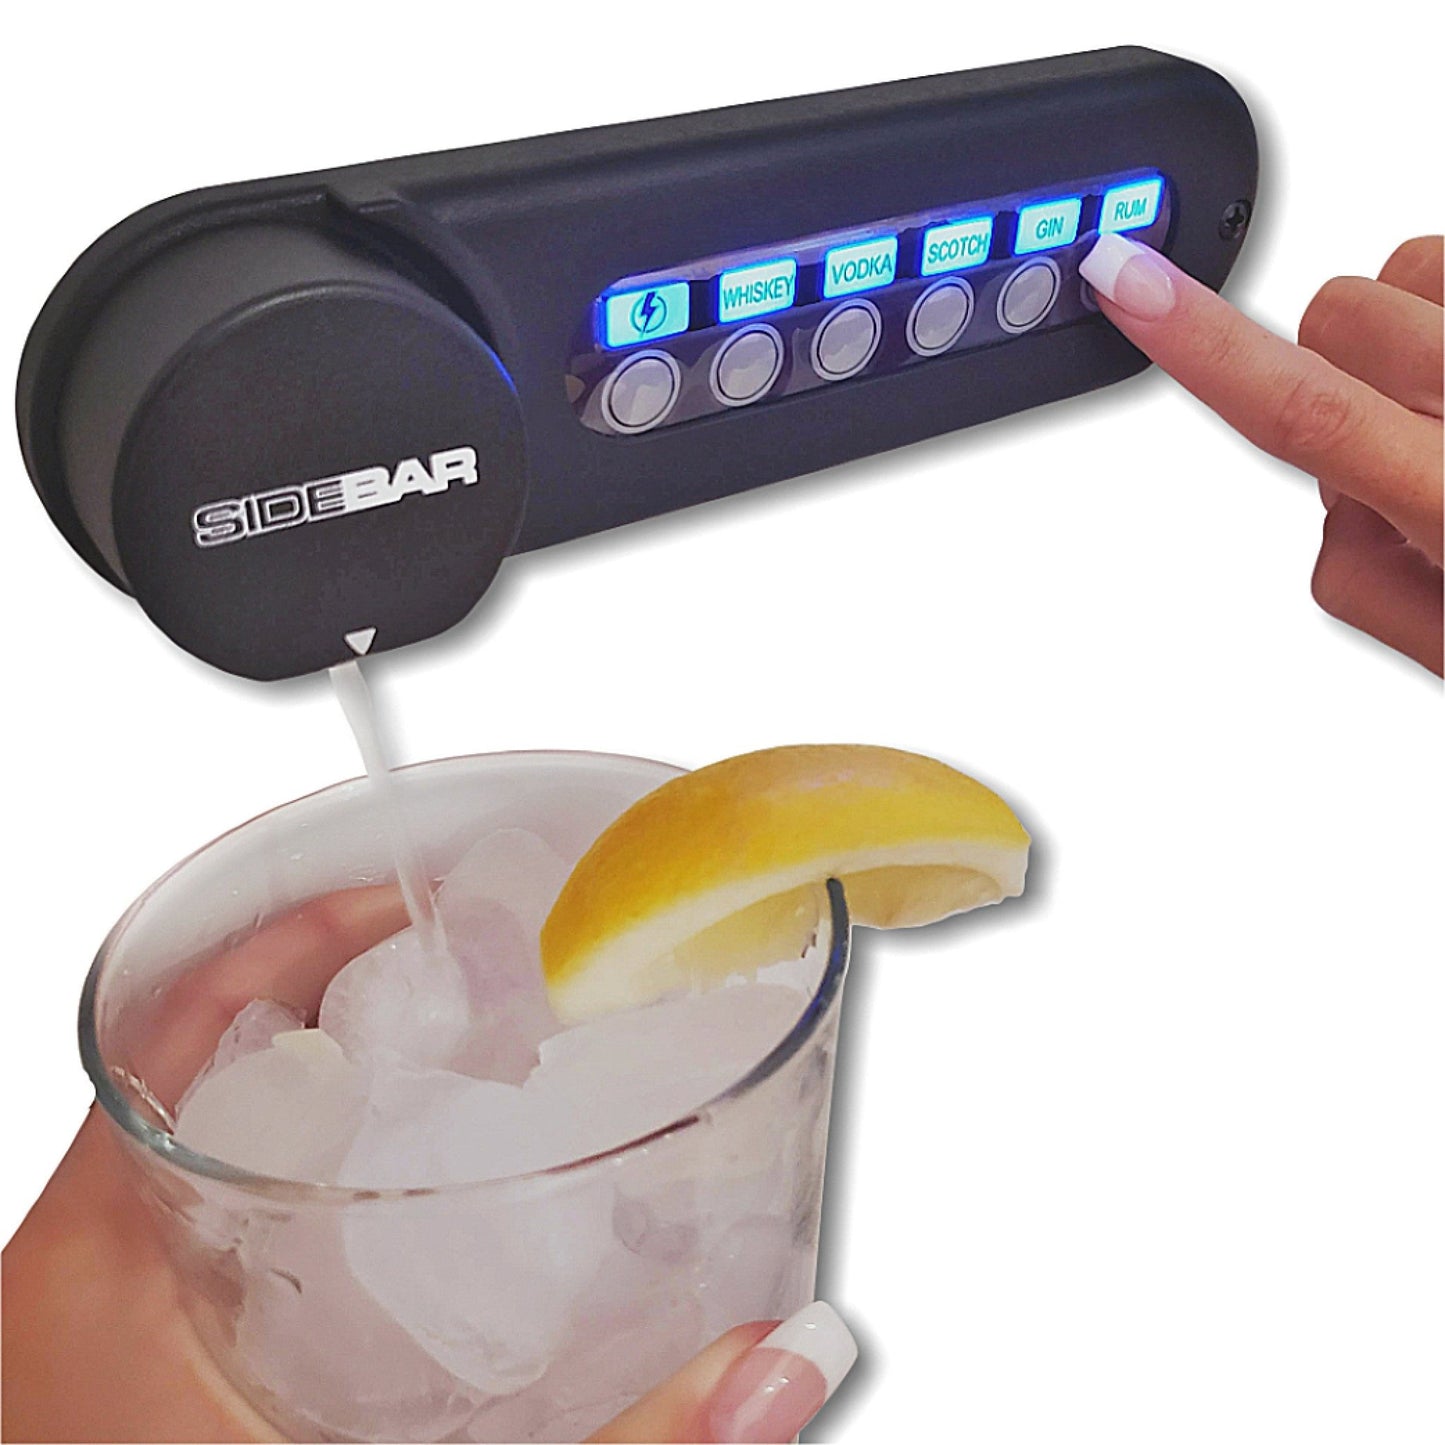 Sidebar Beverage System